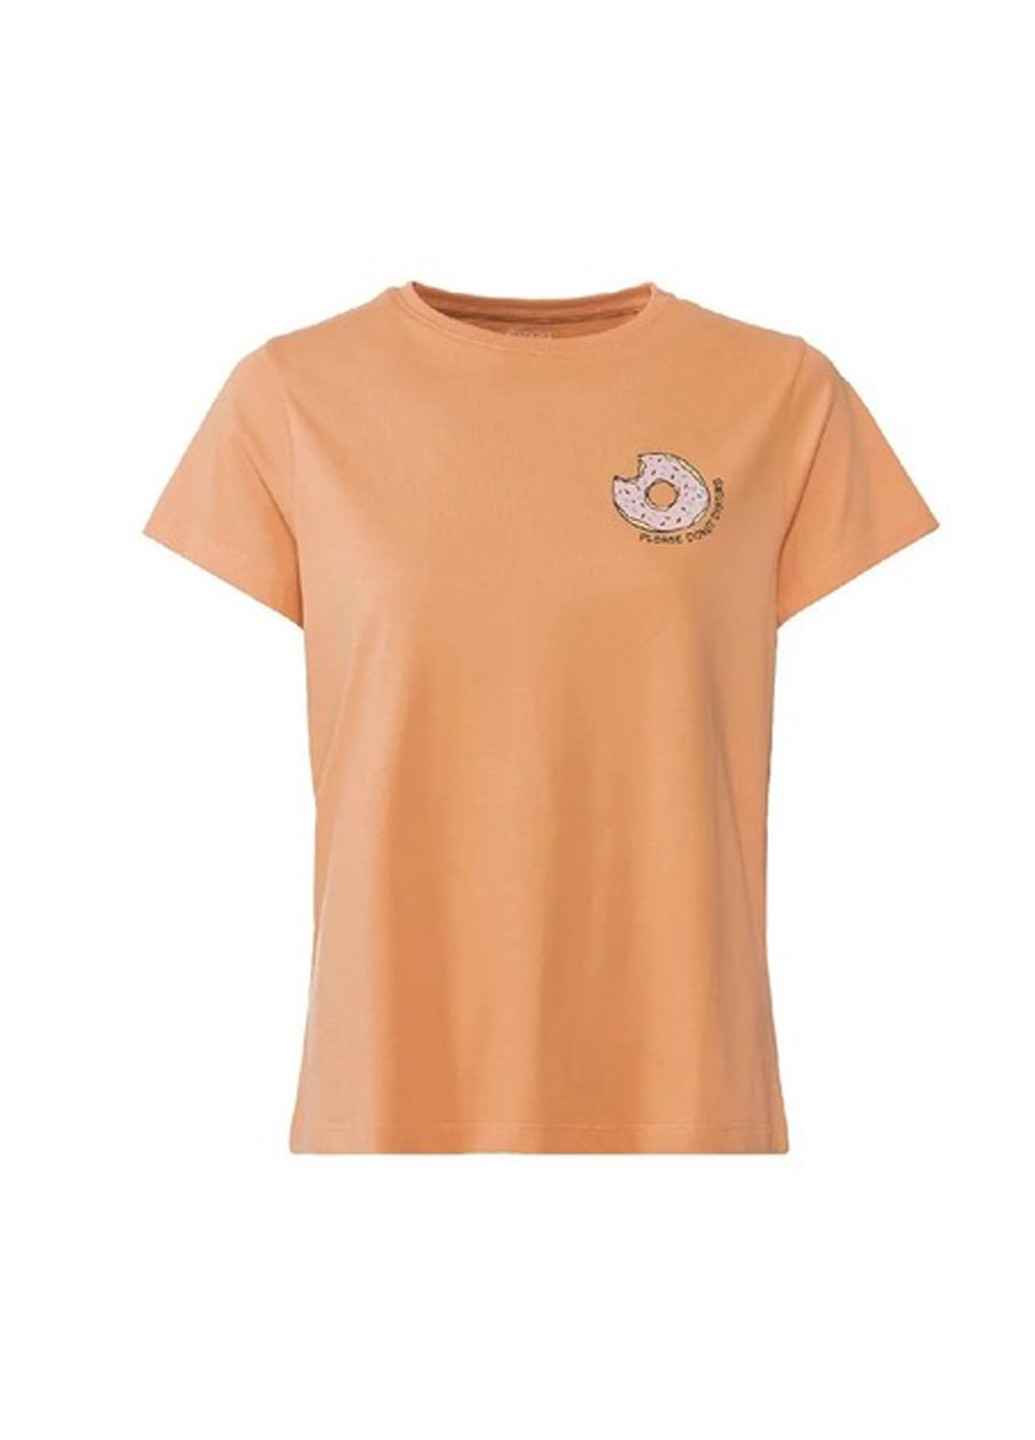 Оранжевая всесезон пижама (футболка, шорты) футболка + шорты Esmara